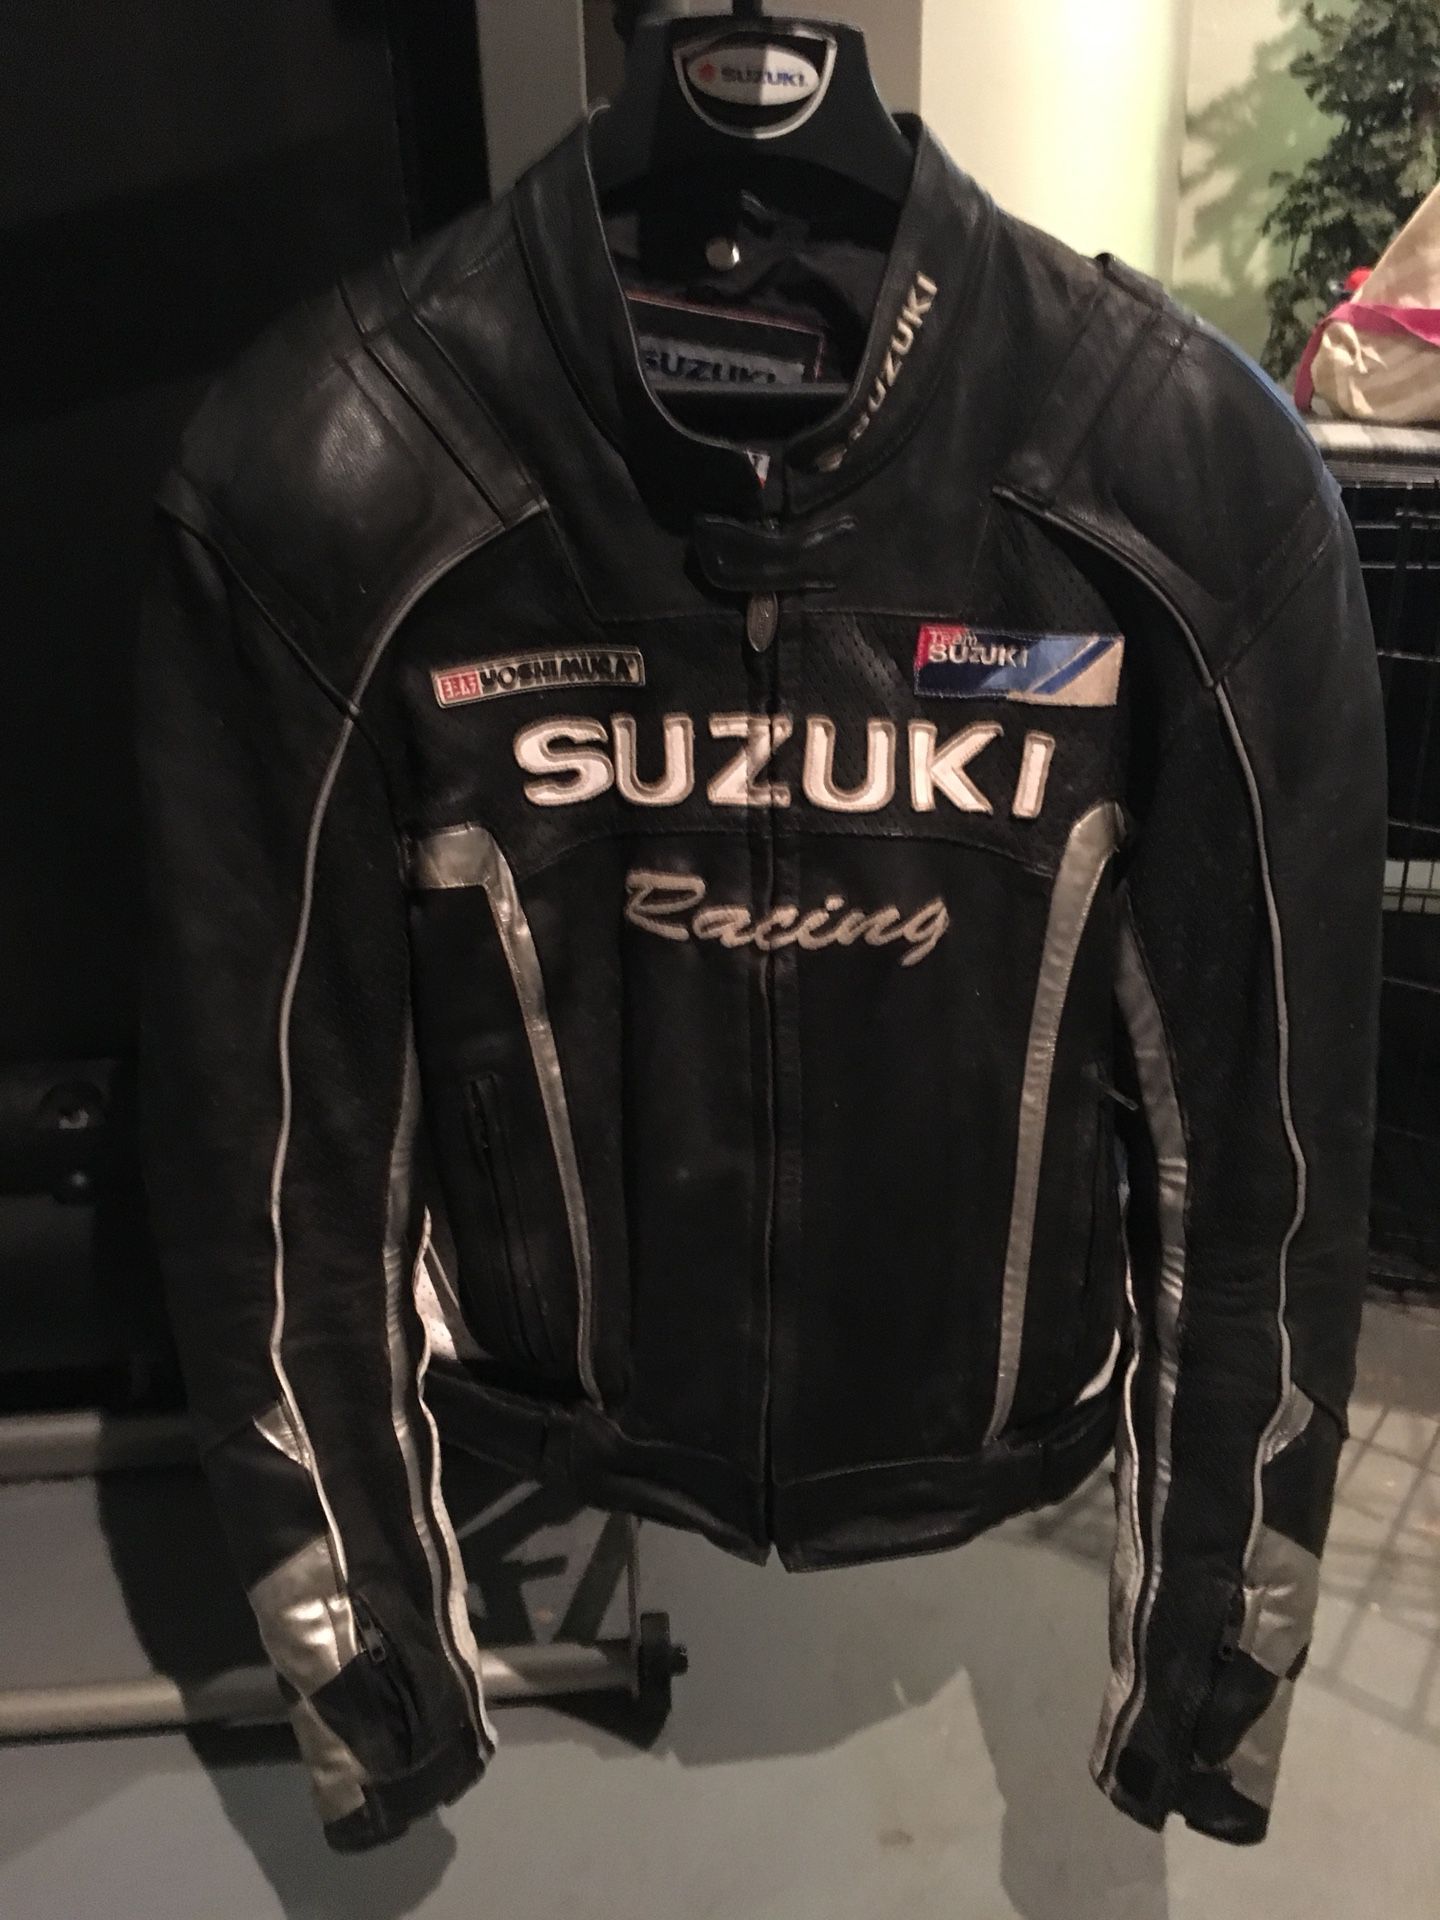 Suzuki racing leather jacket